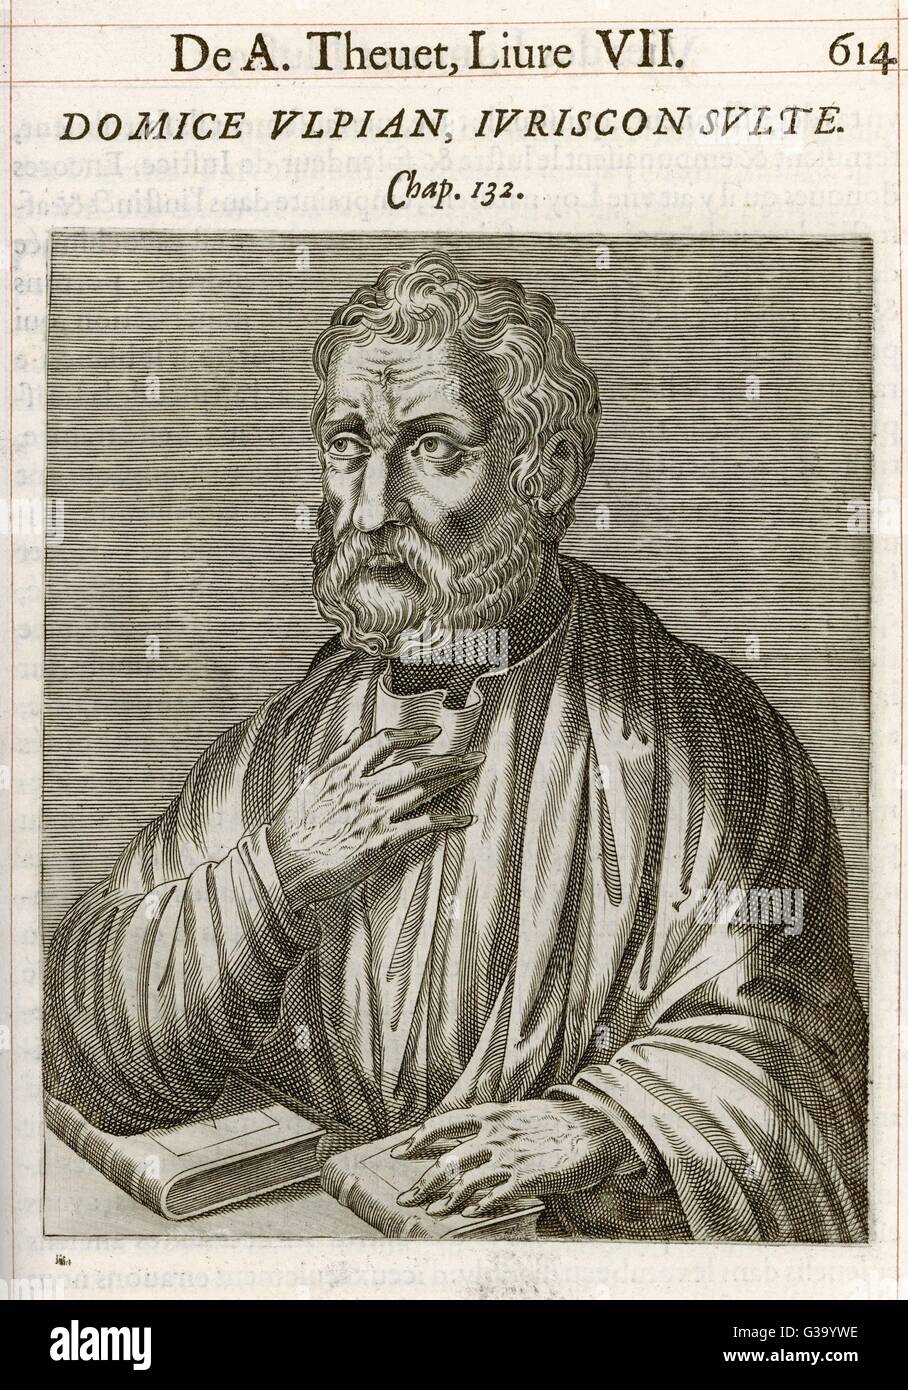 DOMITIUS ULPIANUS römischen Juristen, Autor von vielen juristische Kommentare Datum: - 228 Stockfoto